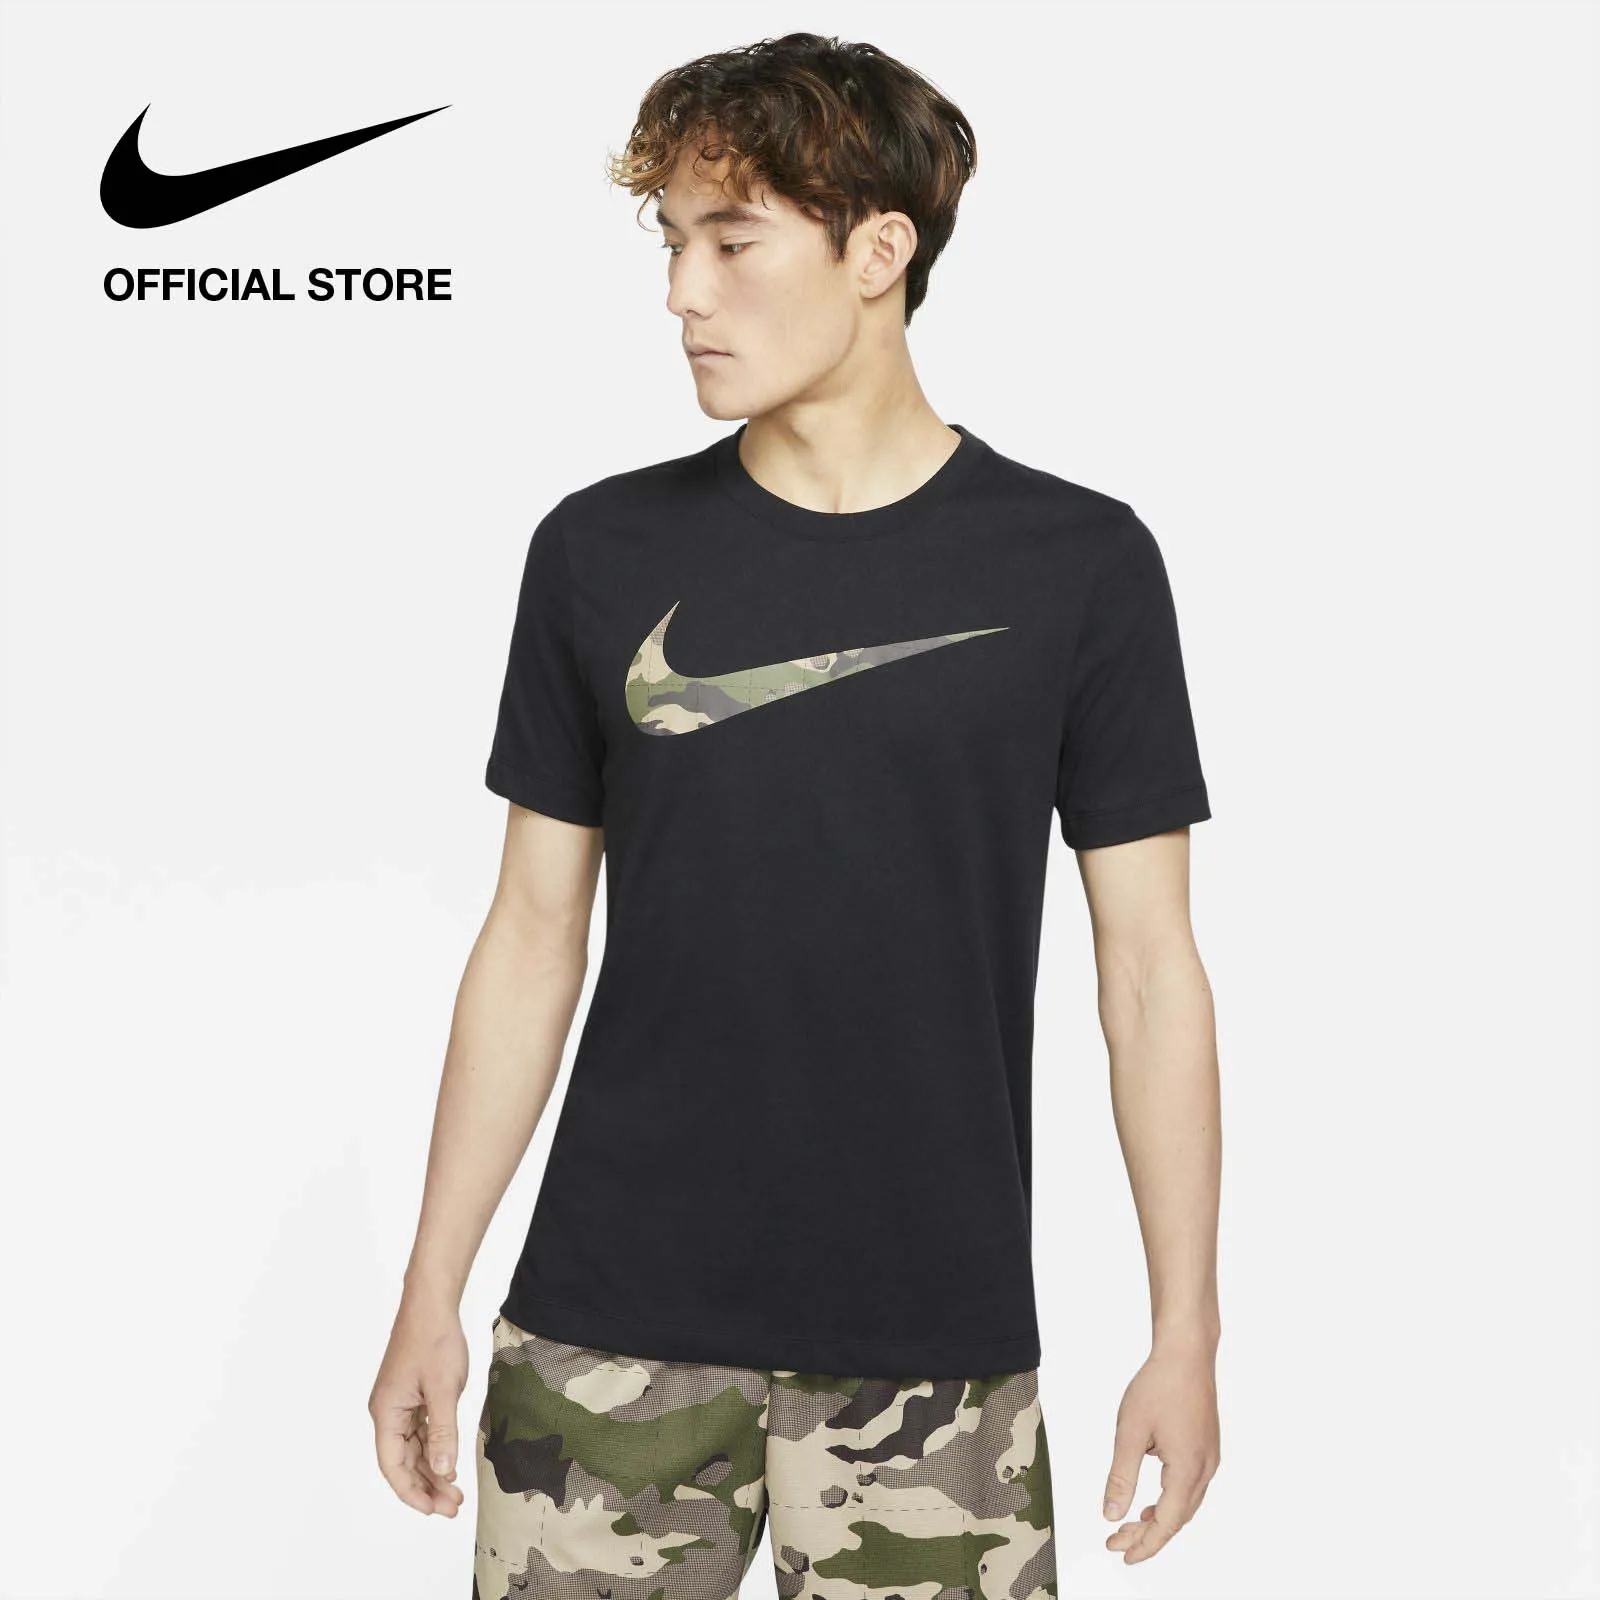 Nike Men's Dri-FIT Graphic Training T-Shirt - Black ไนกี้ เสื้อยืดเทรนนิ่งผู้ชาย มีลายกราฟิก ดรายฟิต - สีดำ